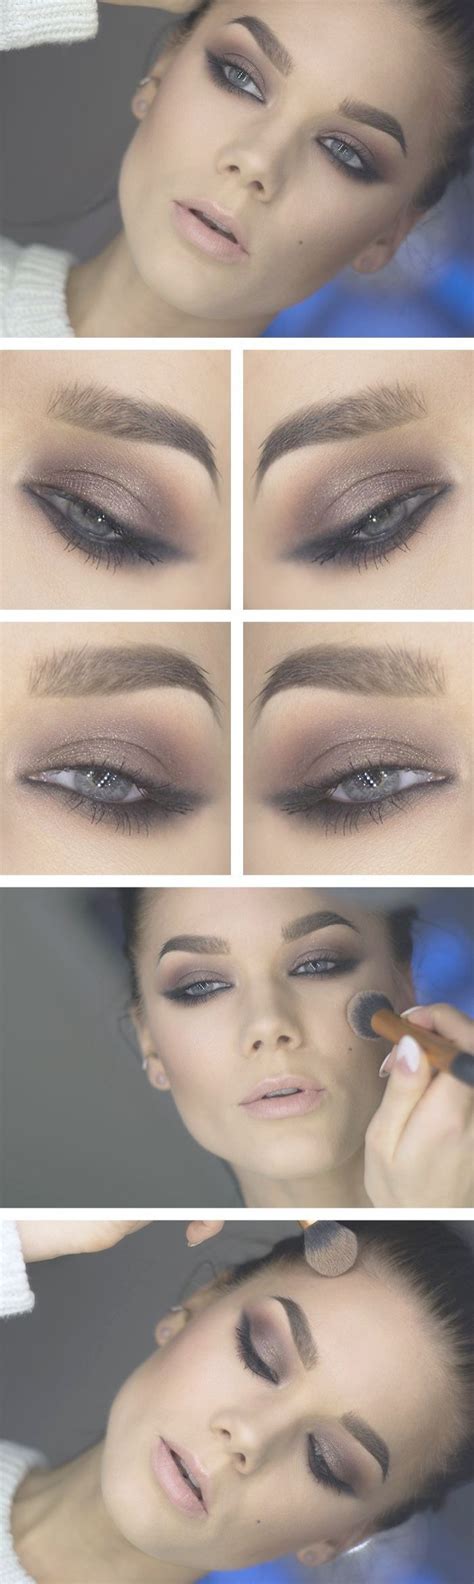 Subtle Makeup For Wedding Natural Makeup Hashtags Eye Makeup Smokey Eye Makeup Eye Make Up